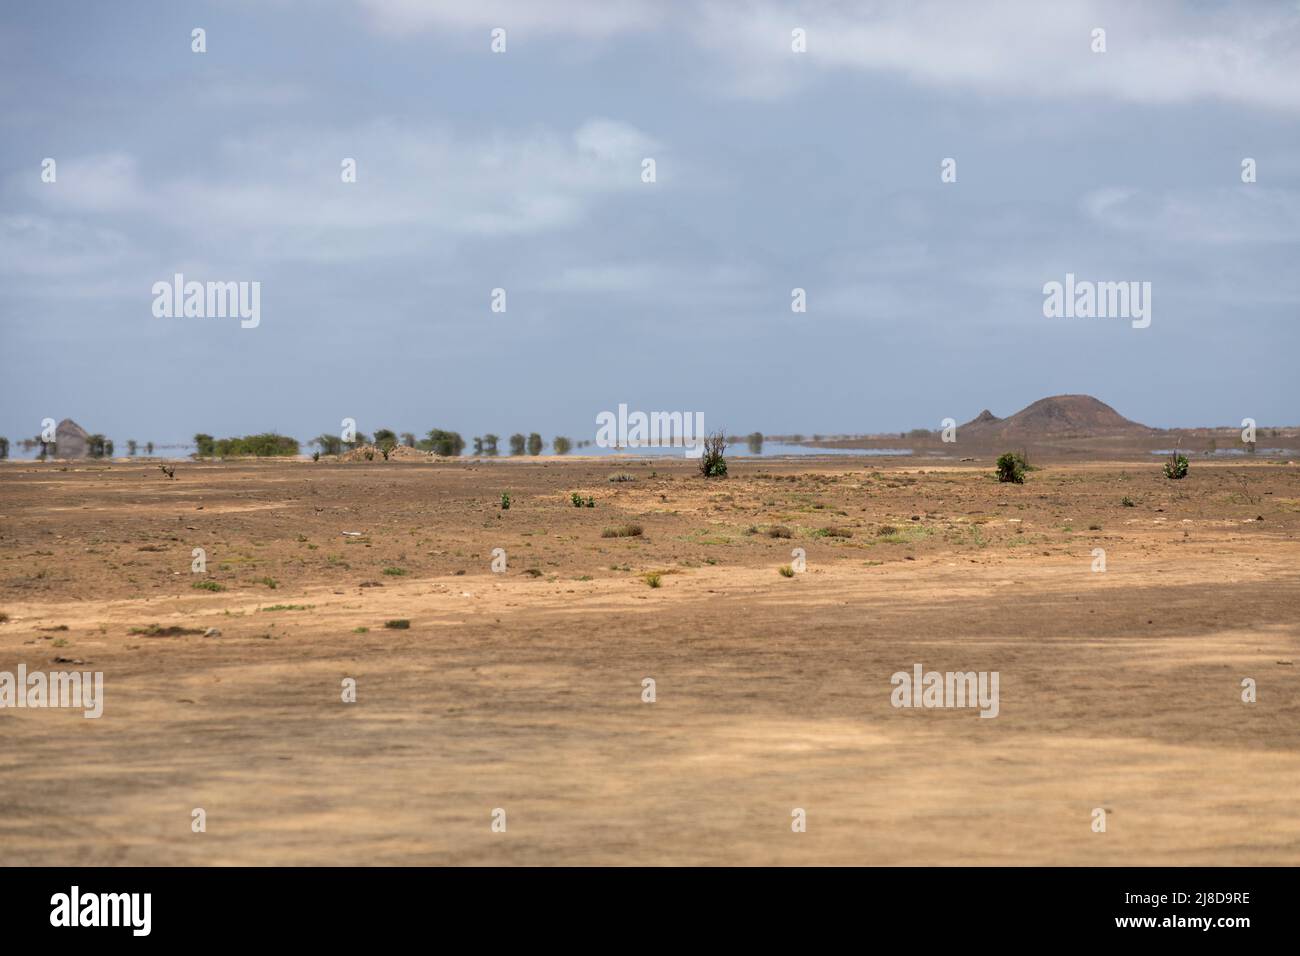 Die Wüste und die Wunder in Sal, Terra Boa. Das Mirage ist ein optisches Phänomen, das die Illusion eines Wüstensees erzeugt. Kapverdische Inseln, Afrika Stockfoto